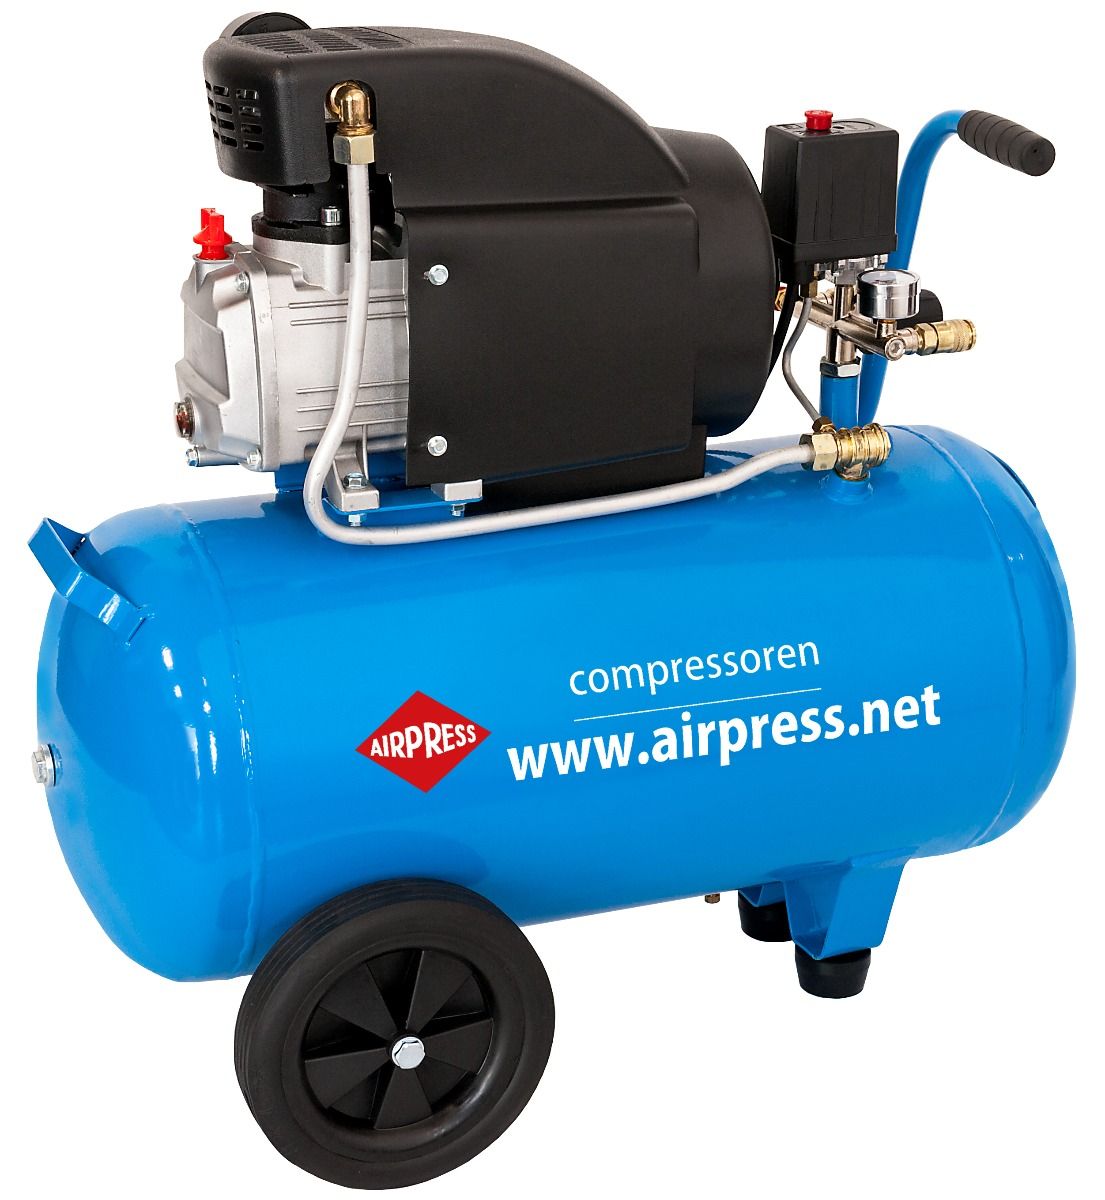 ᐅ AIRPRESS Kompressor DC 12-180/15 12V 36587 - online kaufen auf